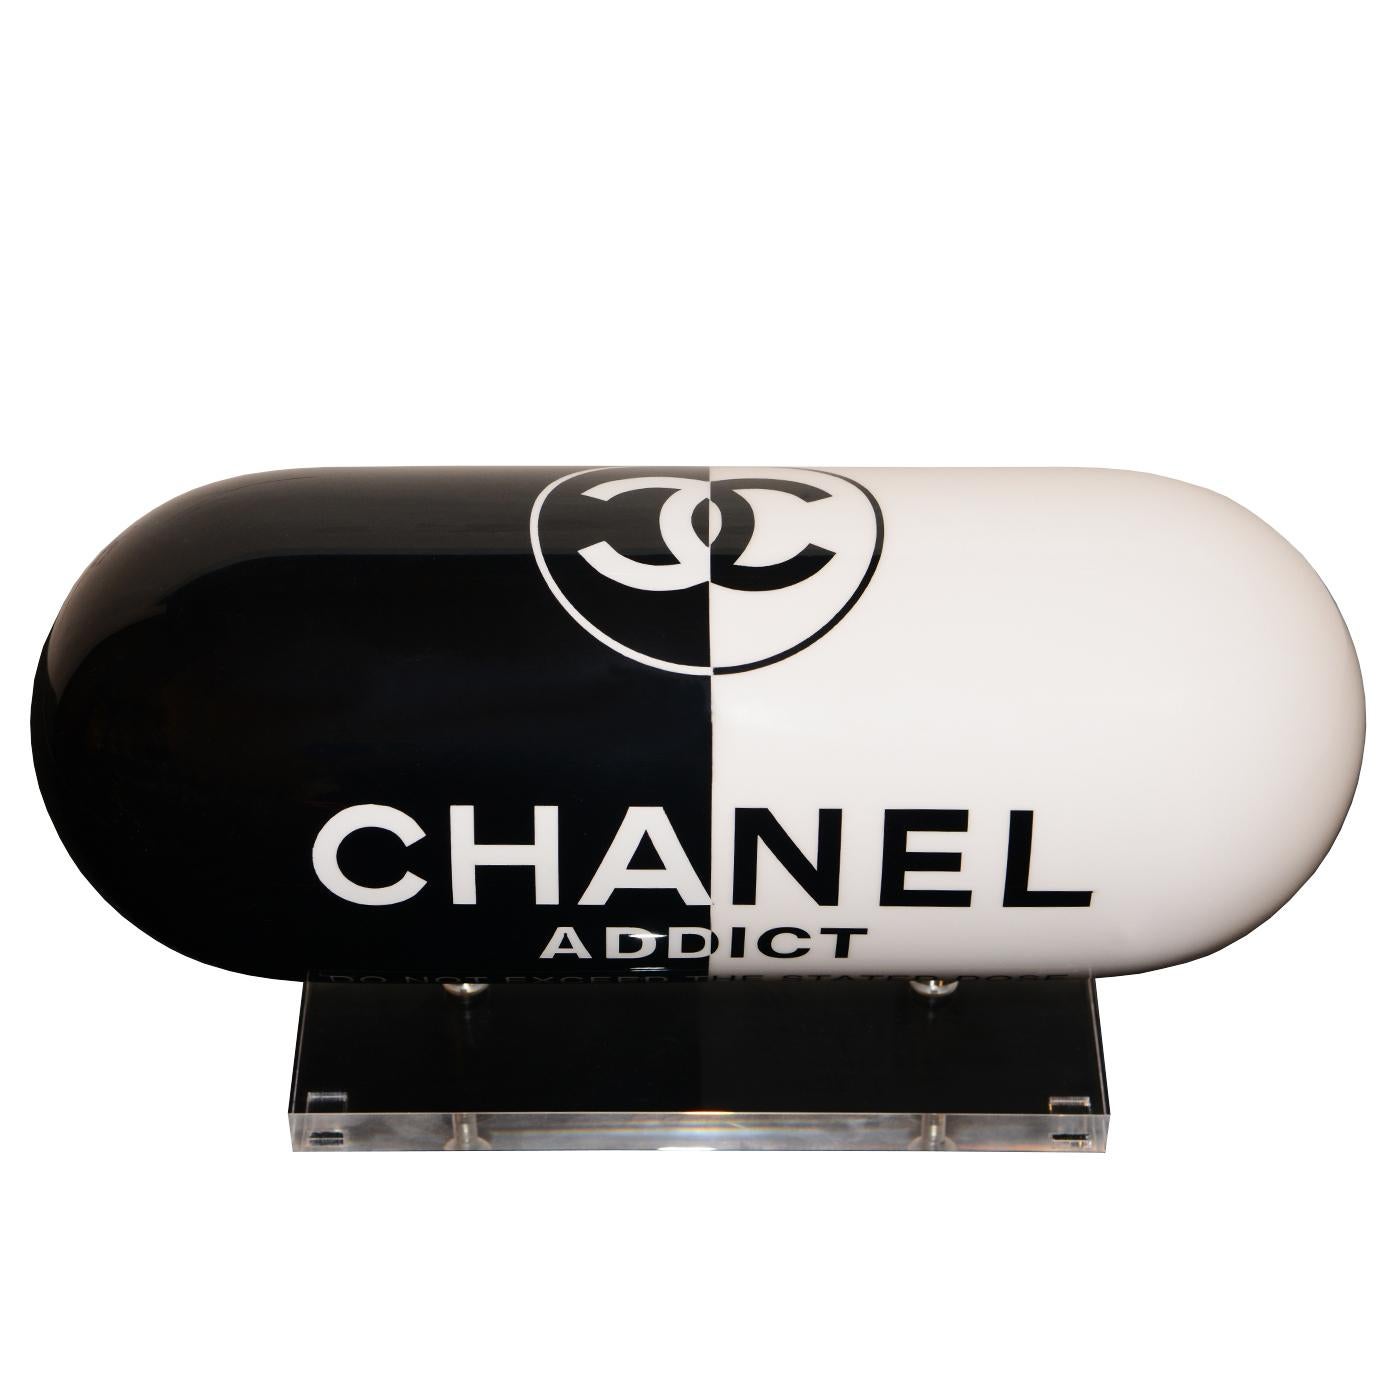 Chanel Addict schwarz-weiße Pillenskulptur mit allen
Struktur aus Harz in lackierter Ausführung. Auf Acrylsockel.
Limitierte Auflage von 8 Stück, nummeriert und signiert
von Eric Salin.